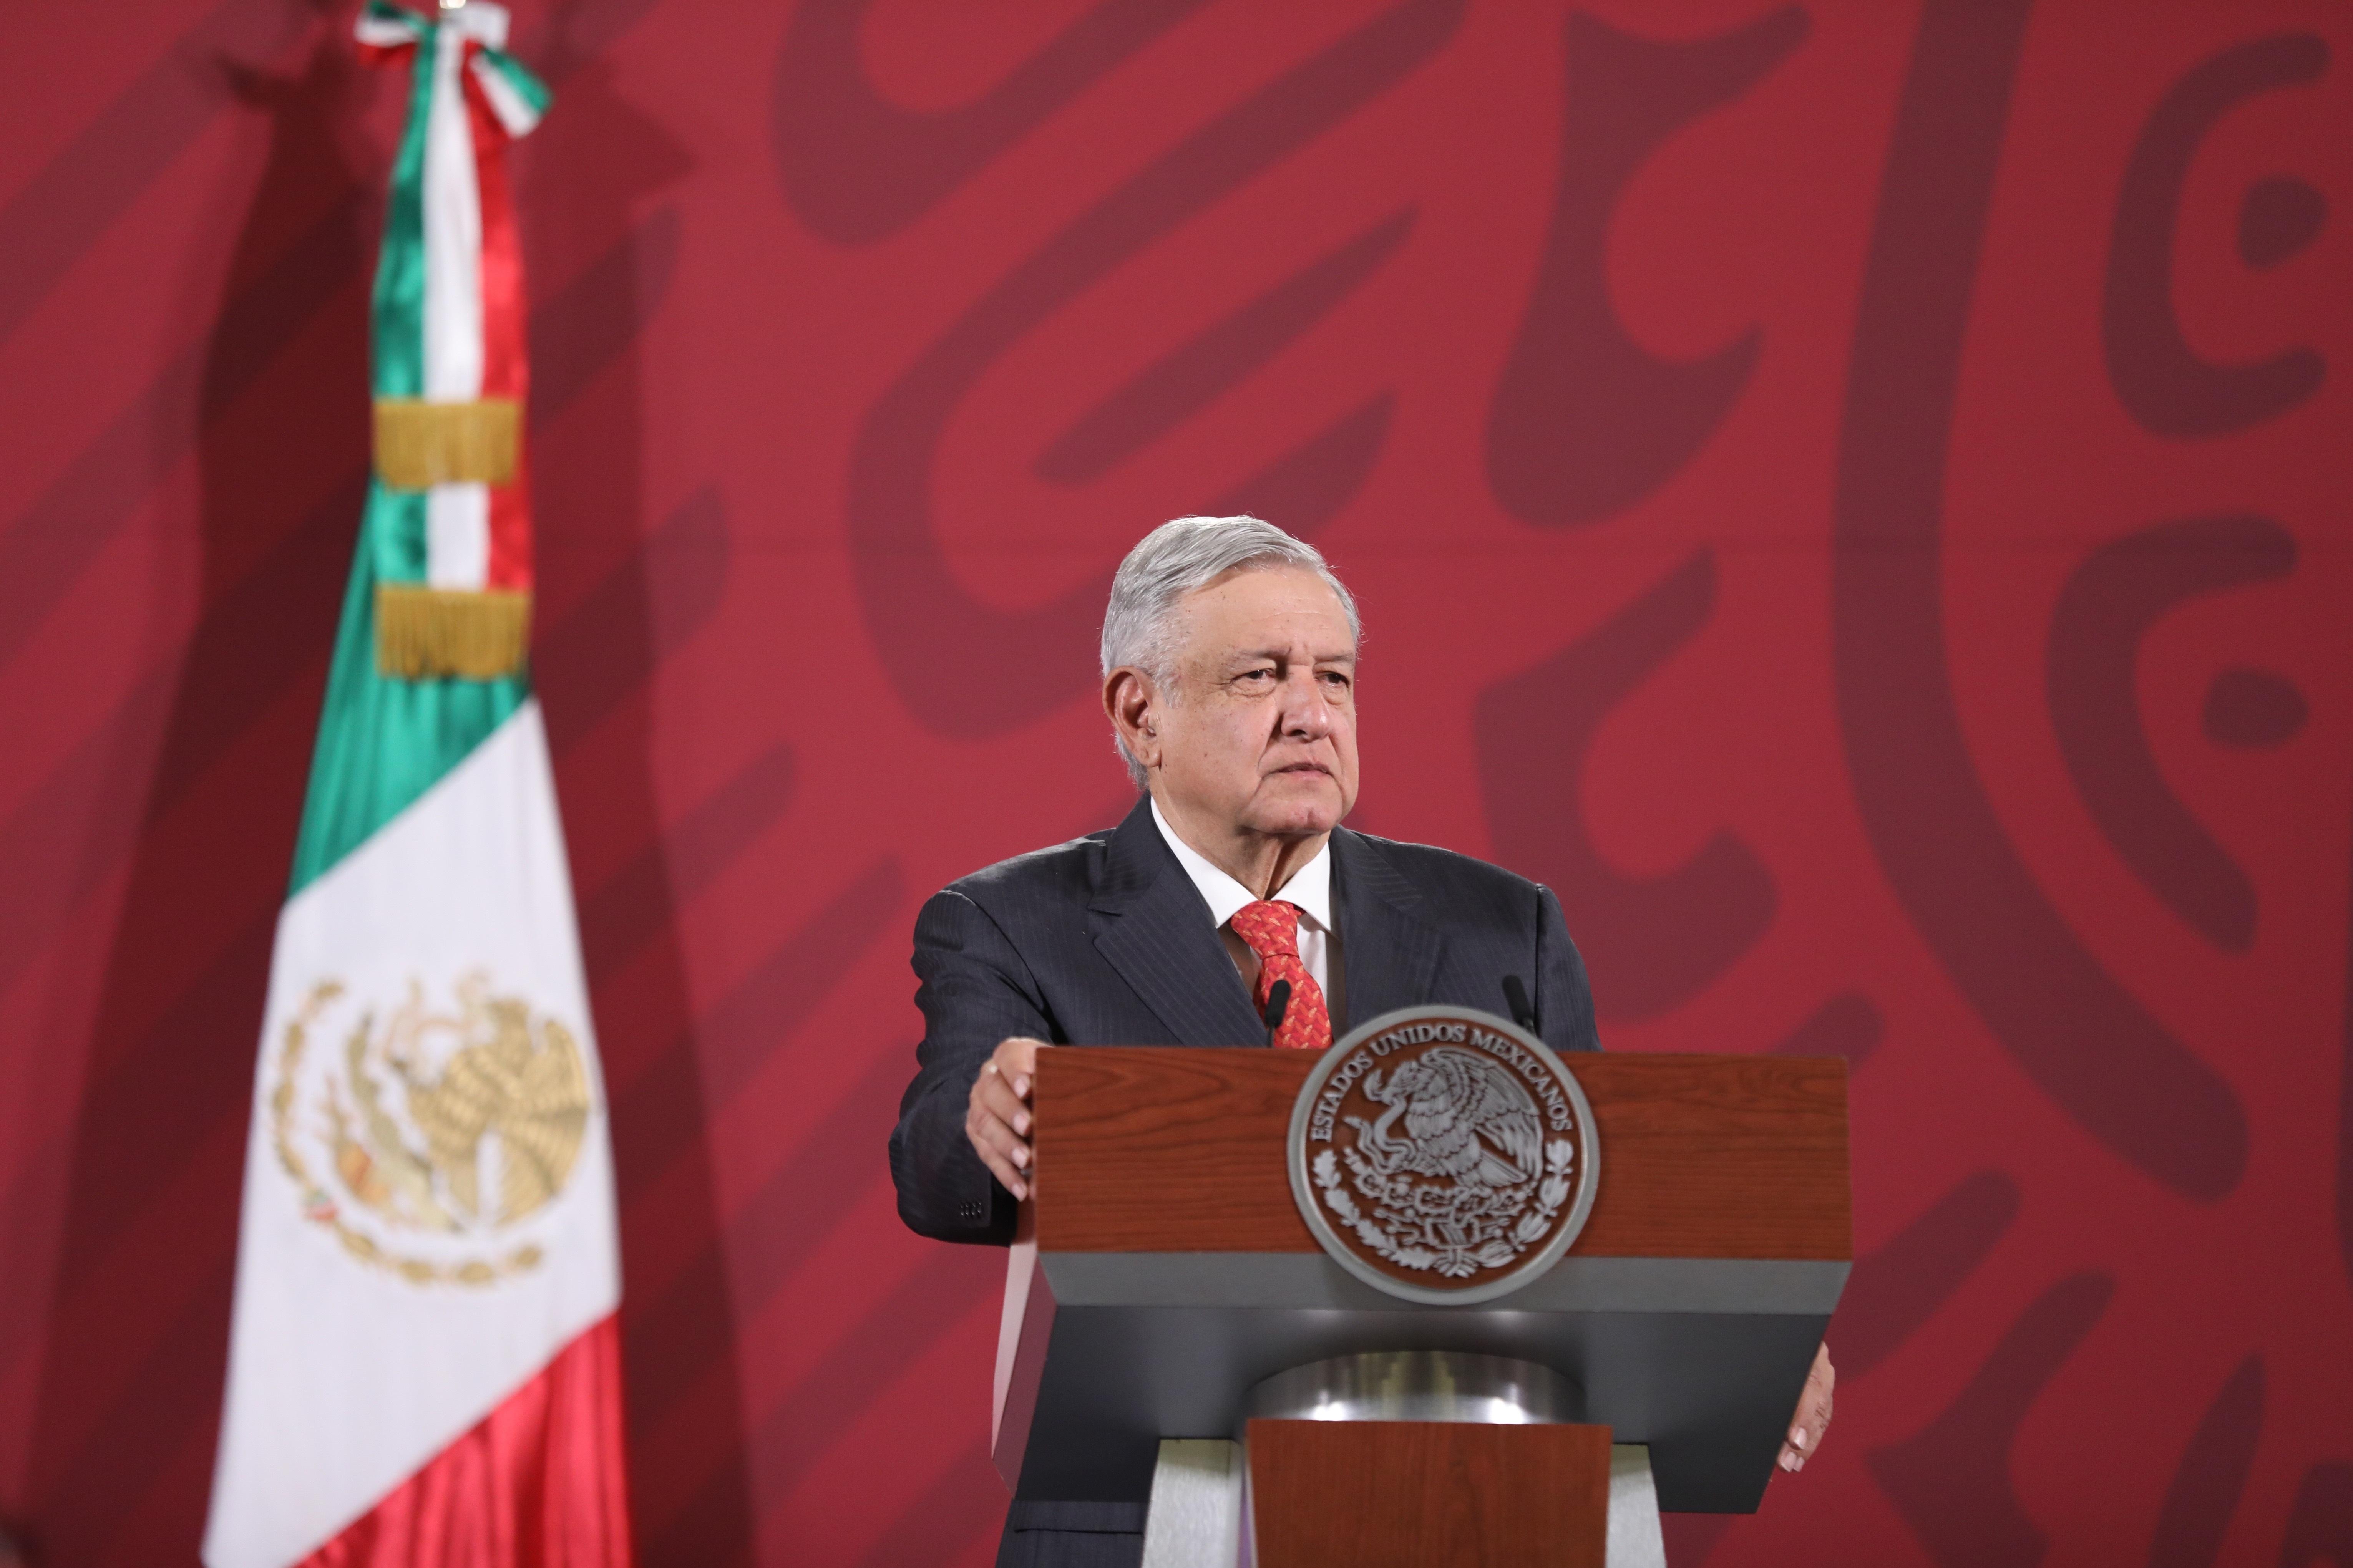 El presidente mexicano Manuel López Obrador anunció el tratado comercial de México, Estados Unidos y Canadá (T-MEC) que vendrá a beneficiar la economía del país. (Foto Prensa Libre: EFE)